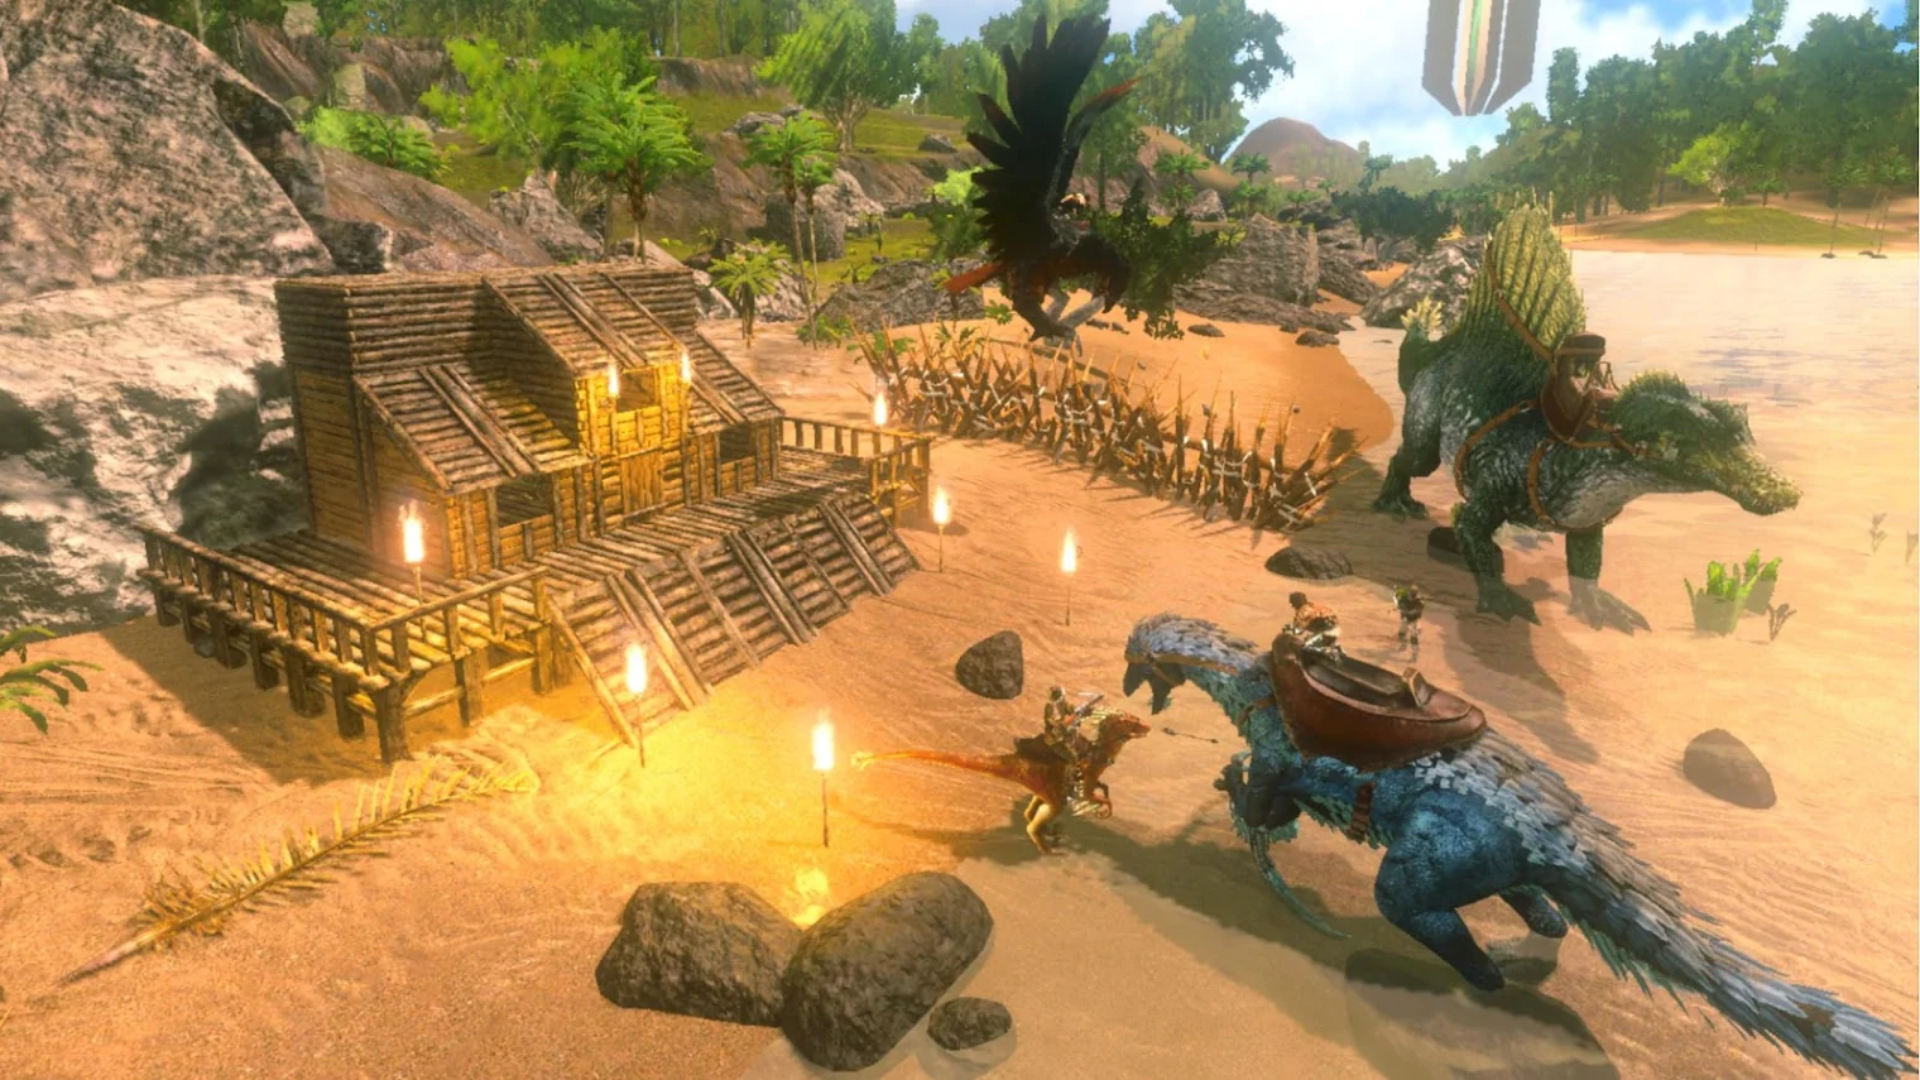 Bästa överlevnadsspel på mobil: Ark: Överlevnad utvecklades. Bilden visar en dinosaurie nära ett hus under uppbyggnad